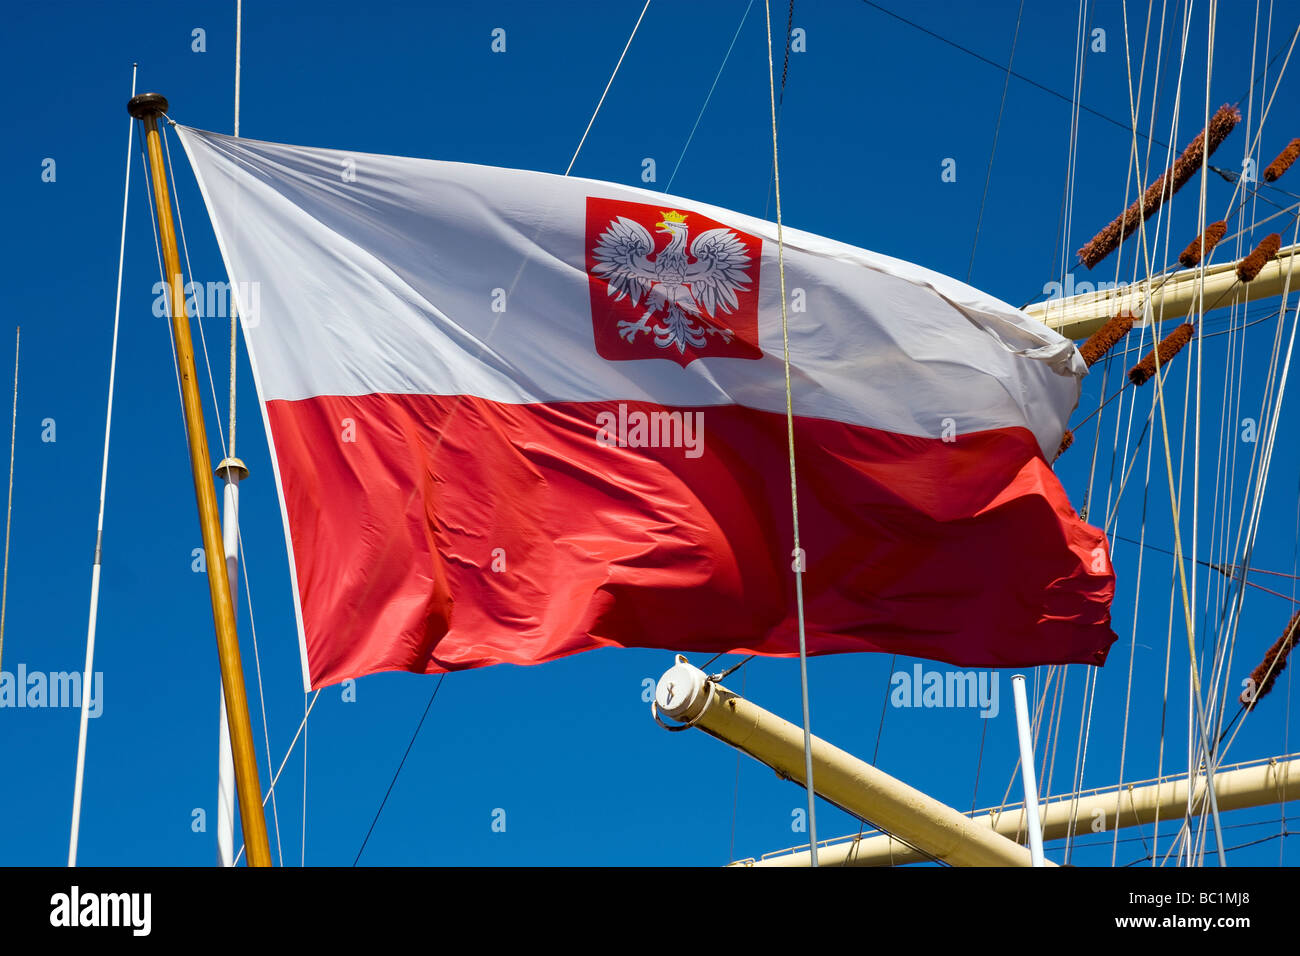 Flagge von Polen bei DAR MLODZIEZY Segeln Schiff während des Aufenthaltes in St.Petersburg Russland 21 06 2009 Stockfoto